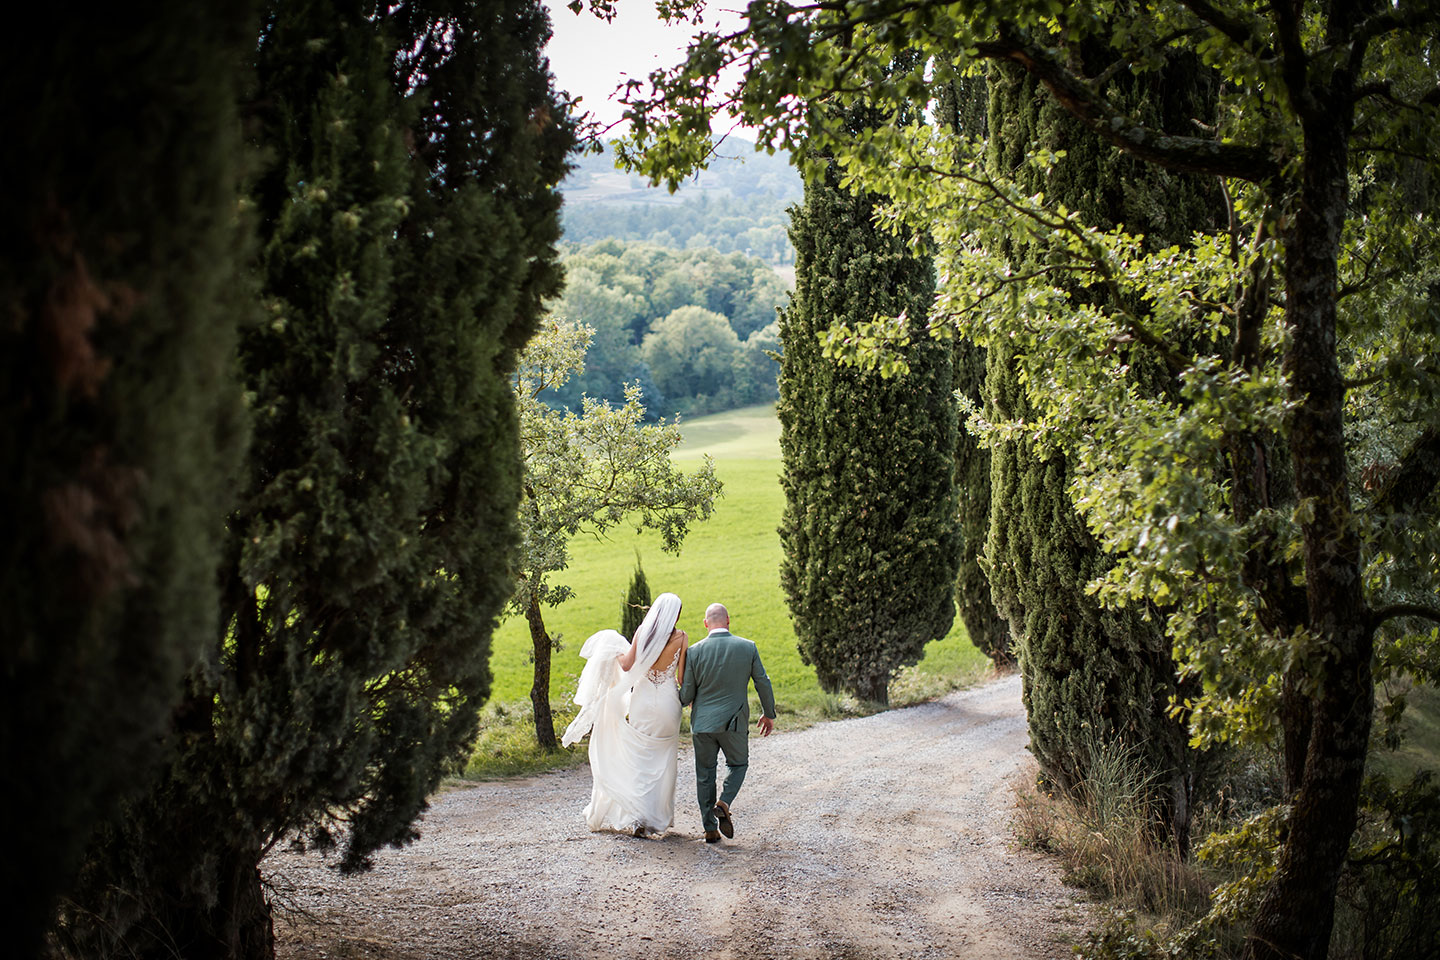 Wedding photographer Tuscany Italy